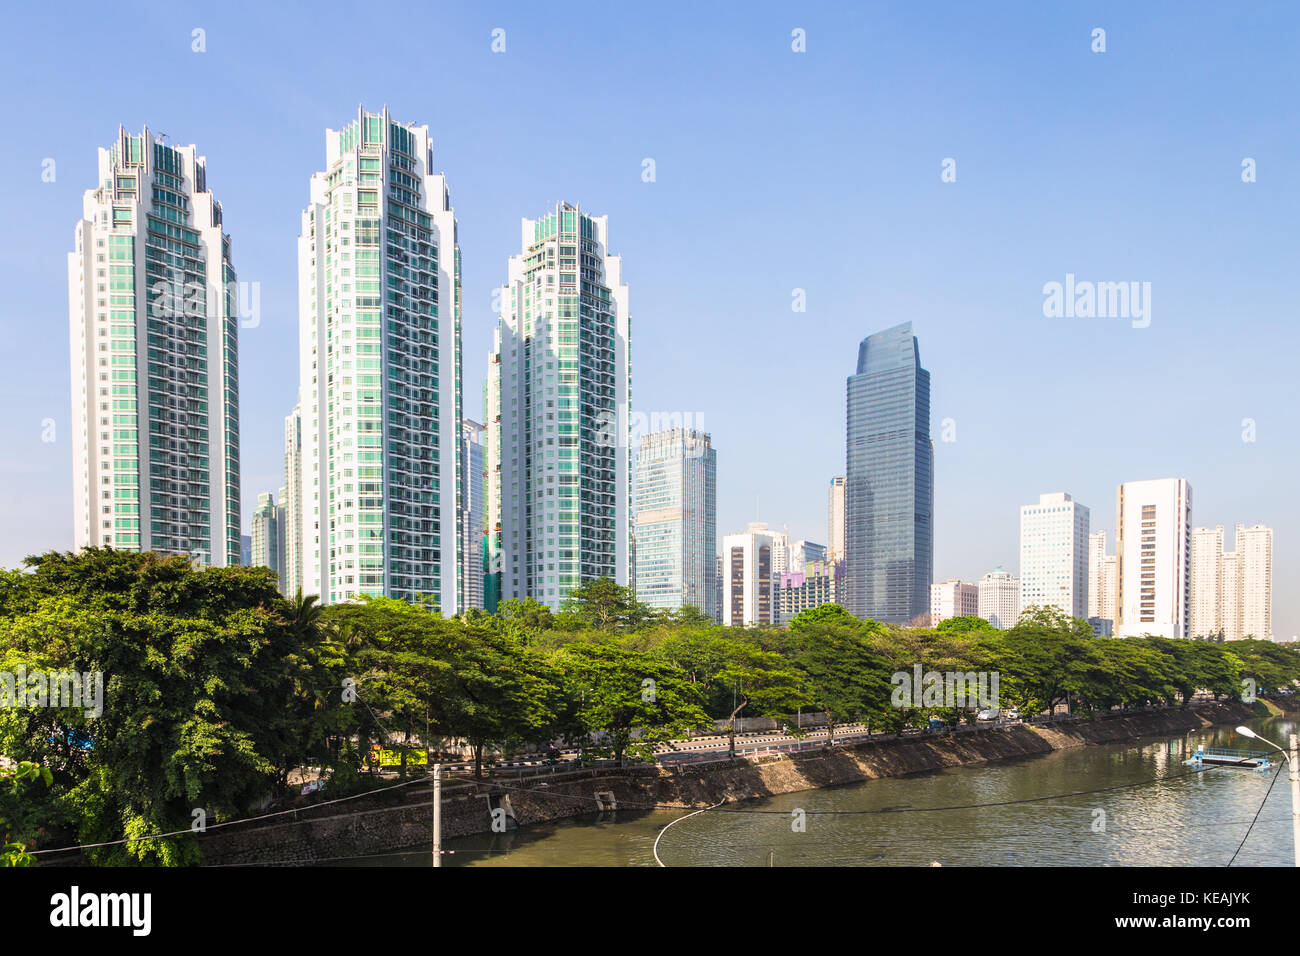 Les immeubles de bureaux et d'habitation de hauteur le long de la rivière Ciliwung dans le centre-ville de Jakarta, capitale de l'Indonésie Banque D'Images